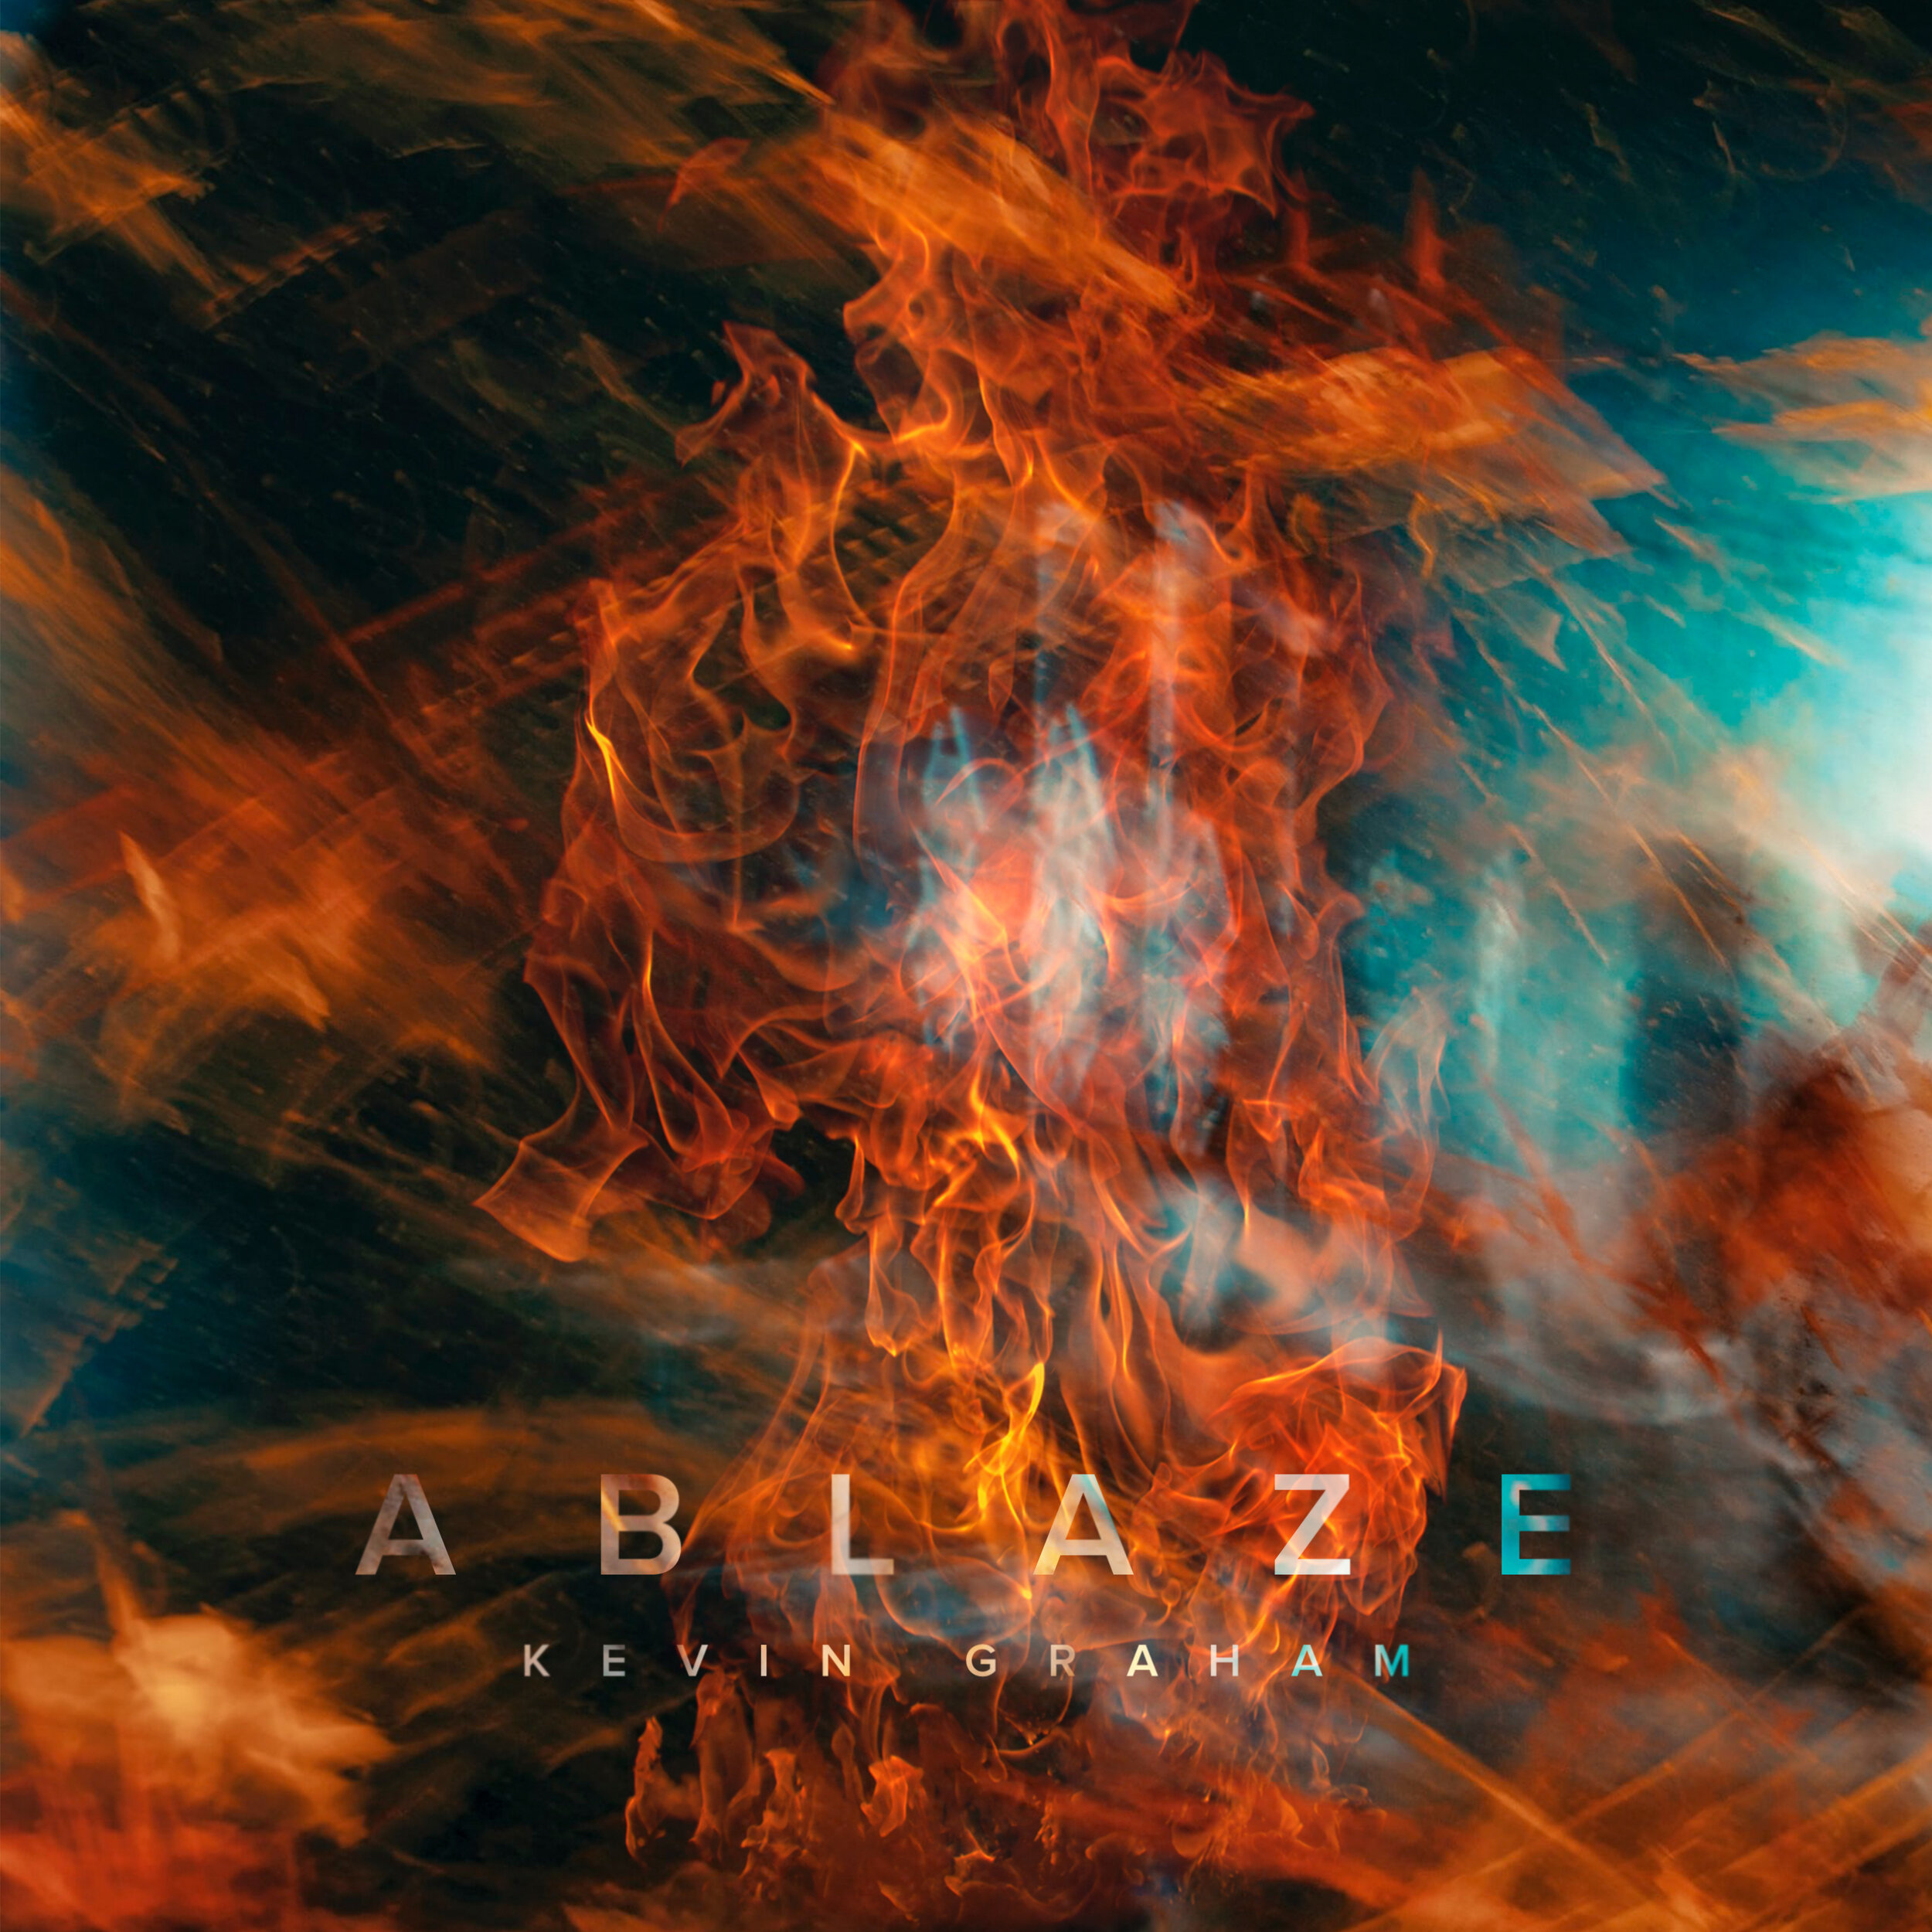 Ablaze Art 7.jpg